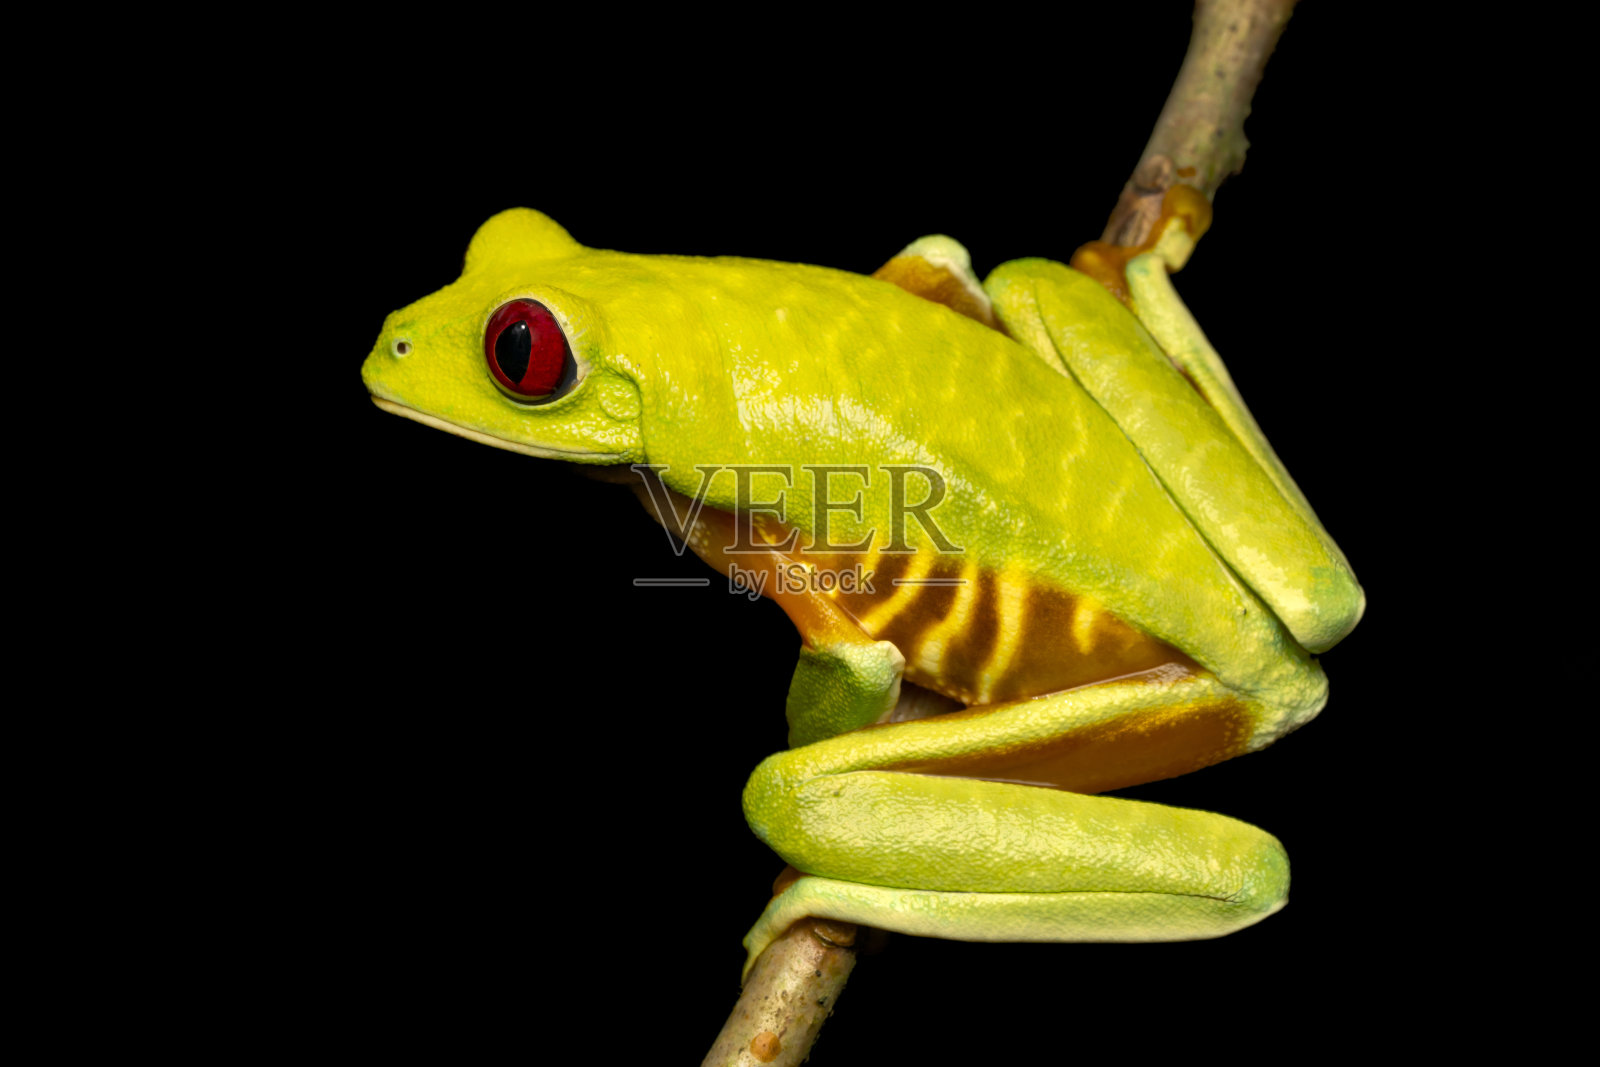 红眼树蛙-哥斯达黎加太平洋变种照片摄影图片